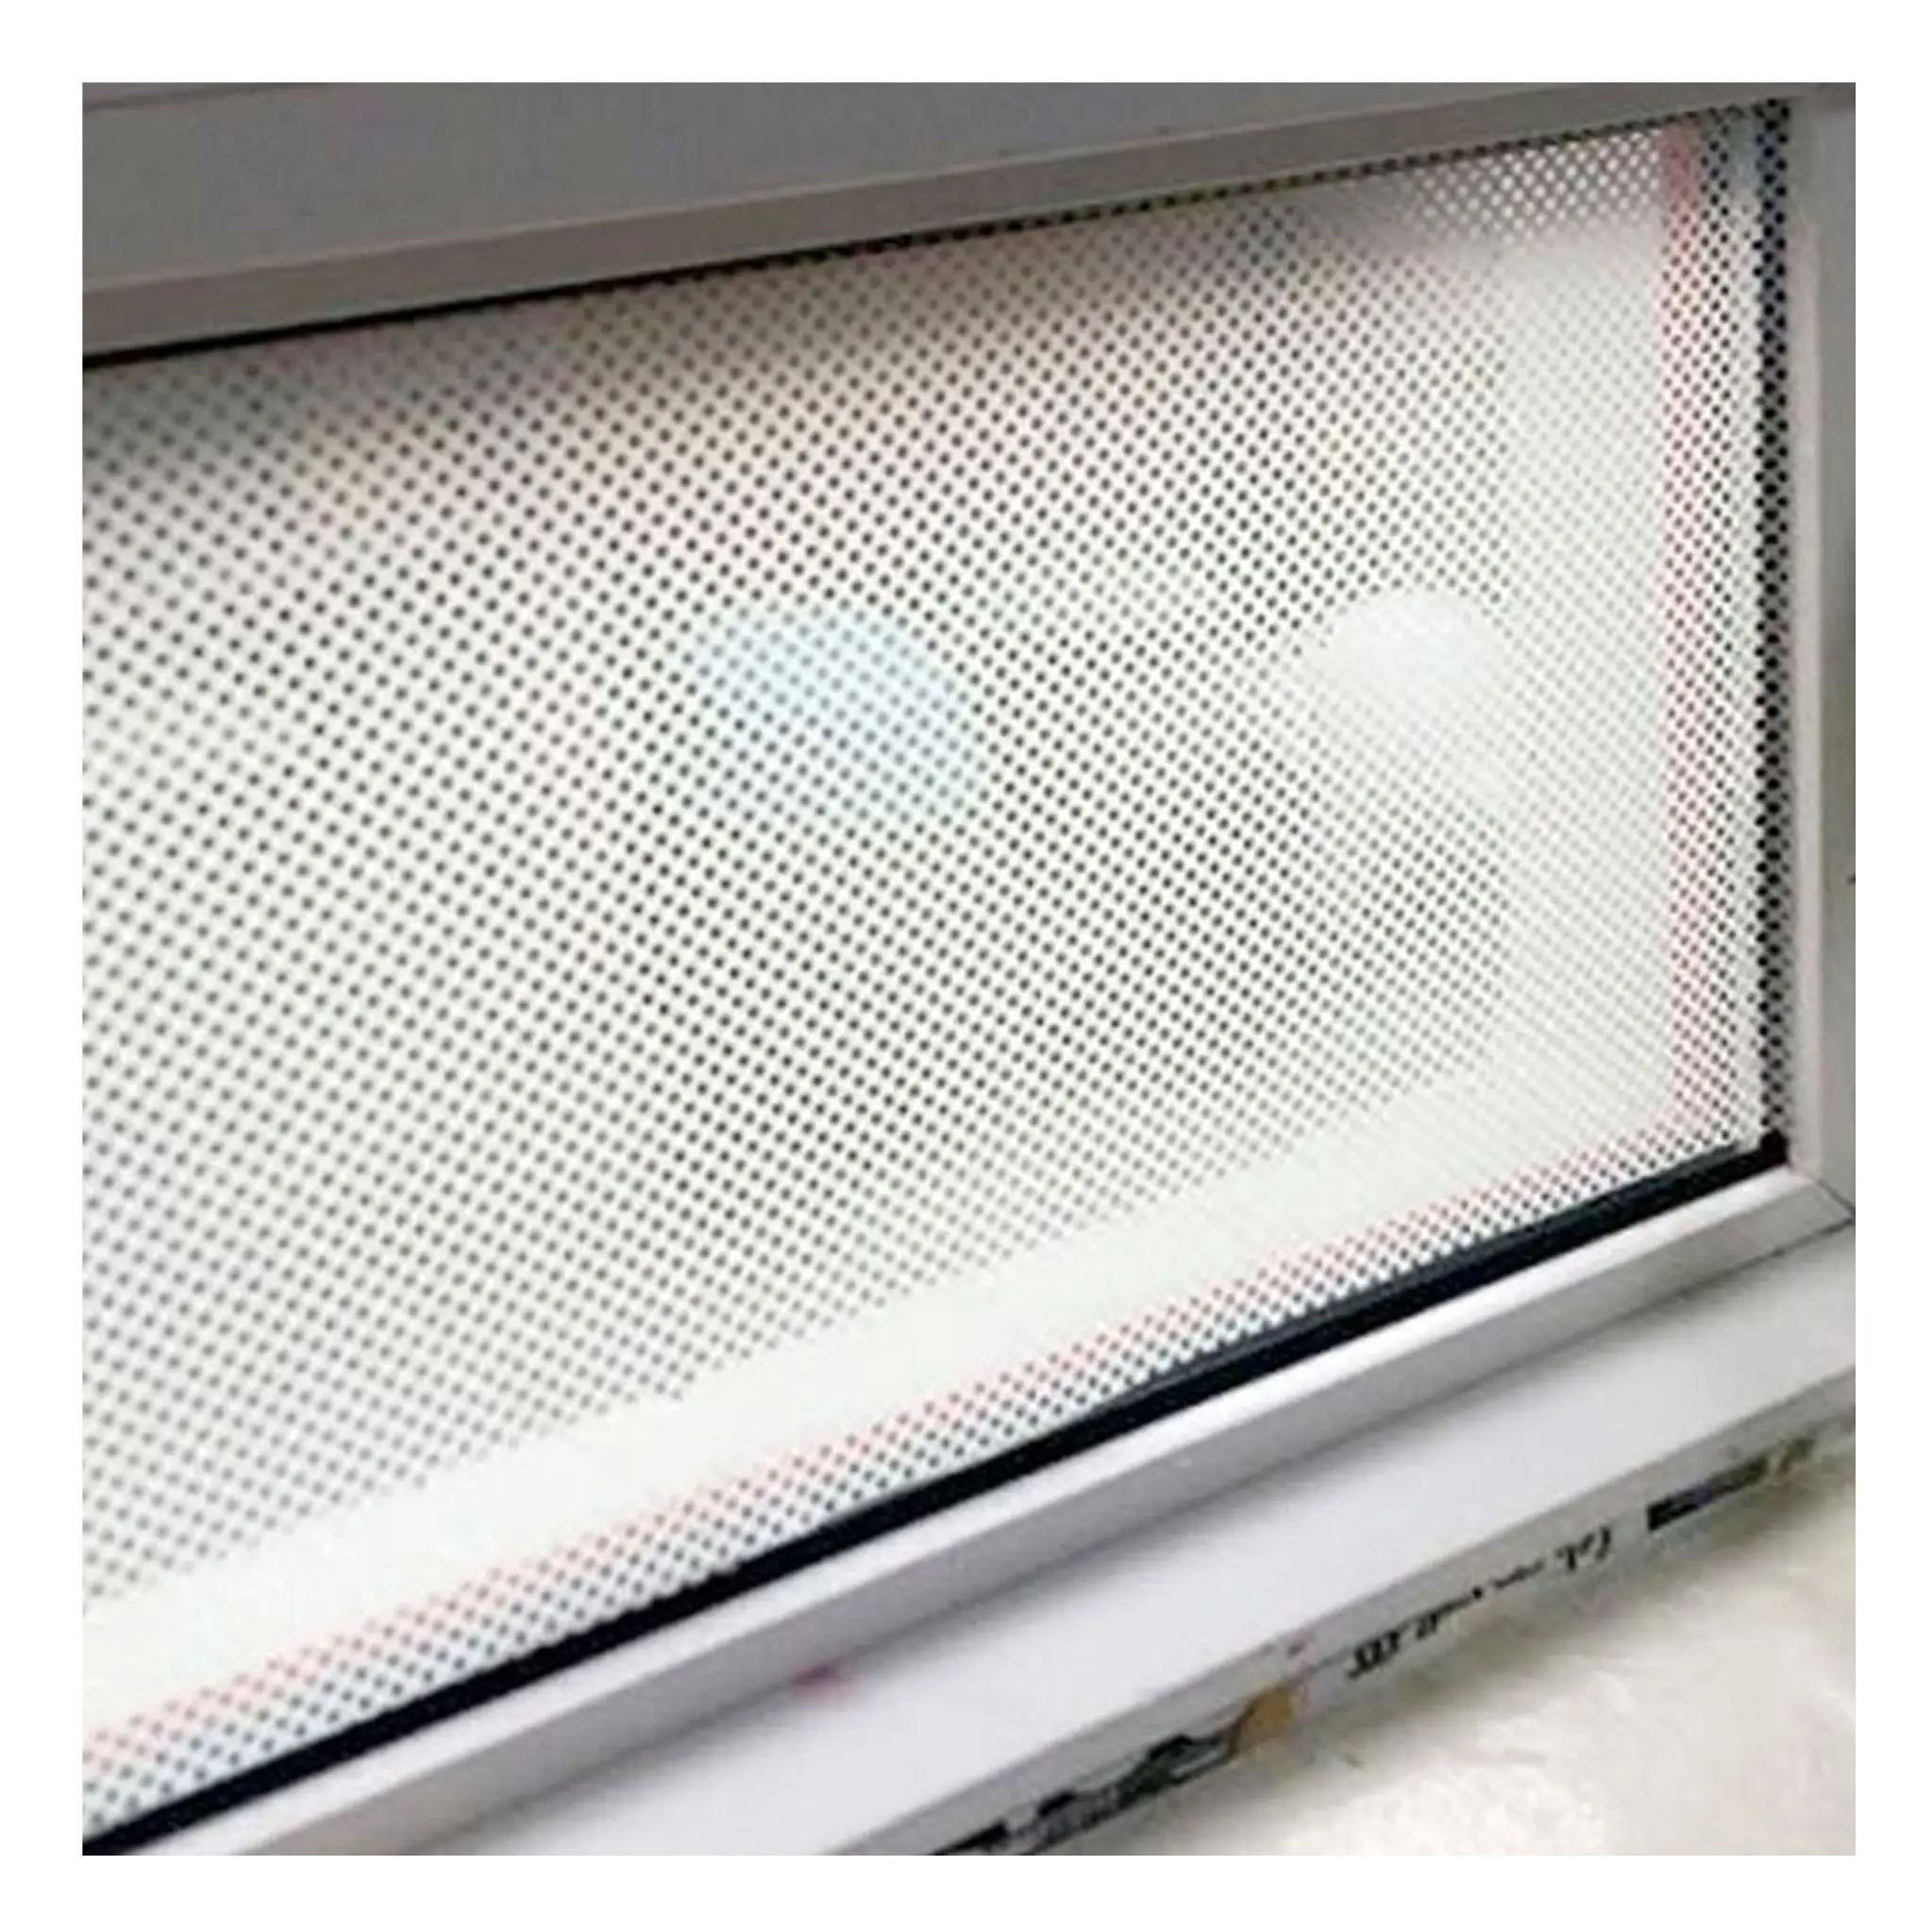 Pegatina de ventana de vidrio perforado con impresión personalizada, pegatina de vinilo transparente de visión unidireccional